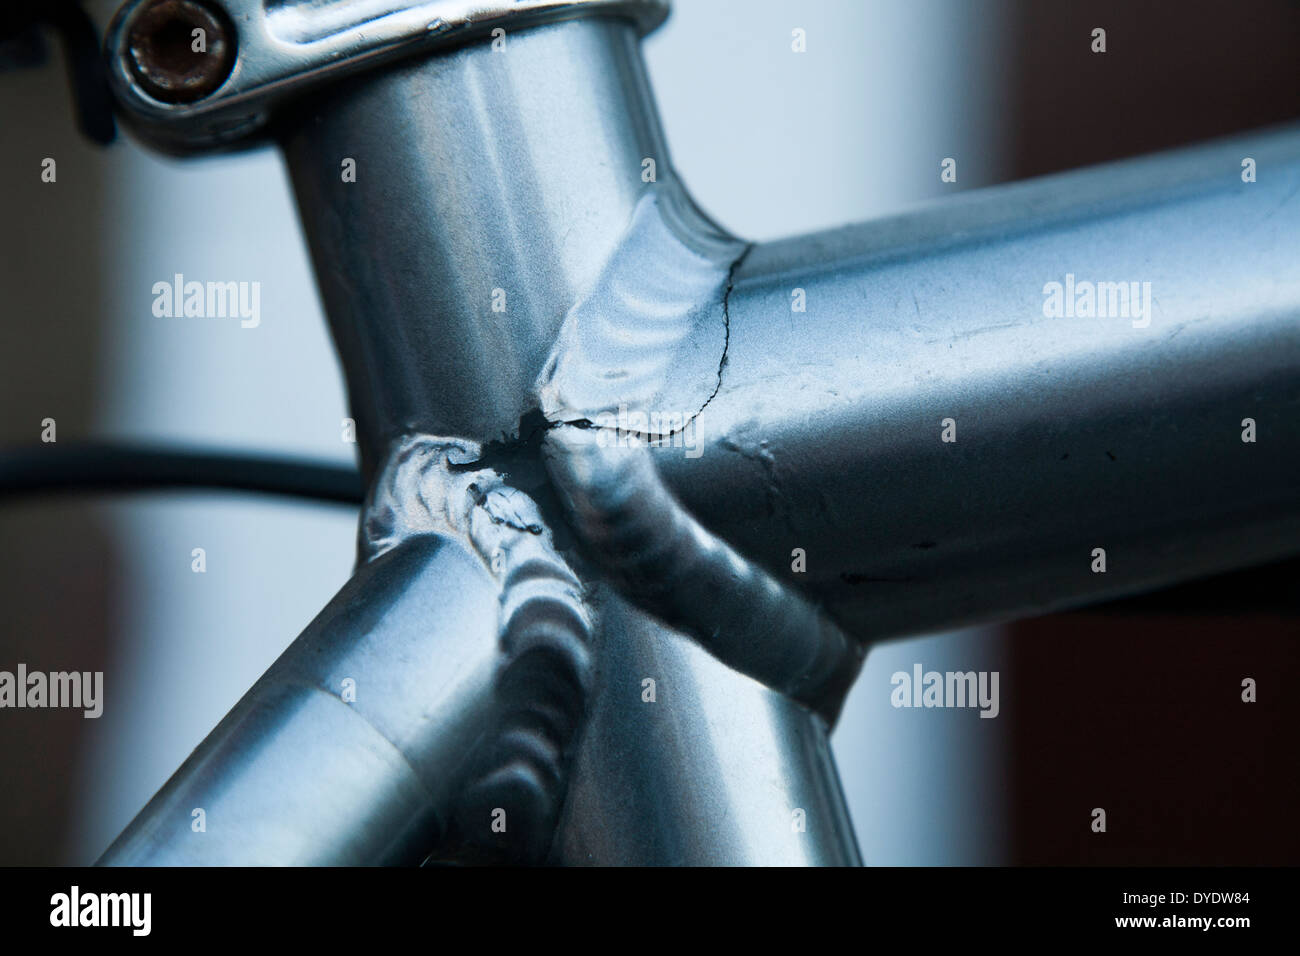 Soldadura rota / soldadura debido a la fatiga del metal en una bicicleta /  bicicleta Fotografía de stock - Alamy